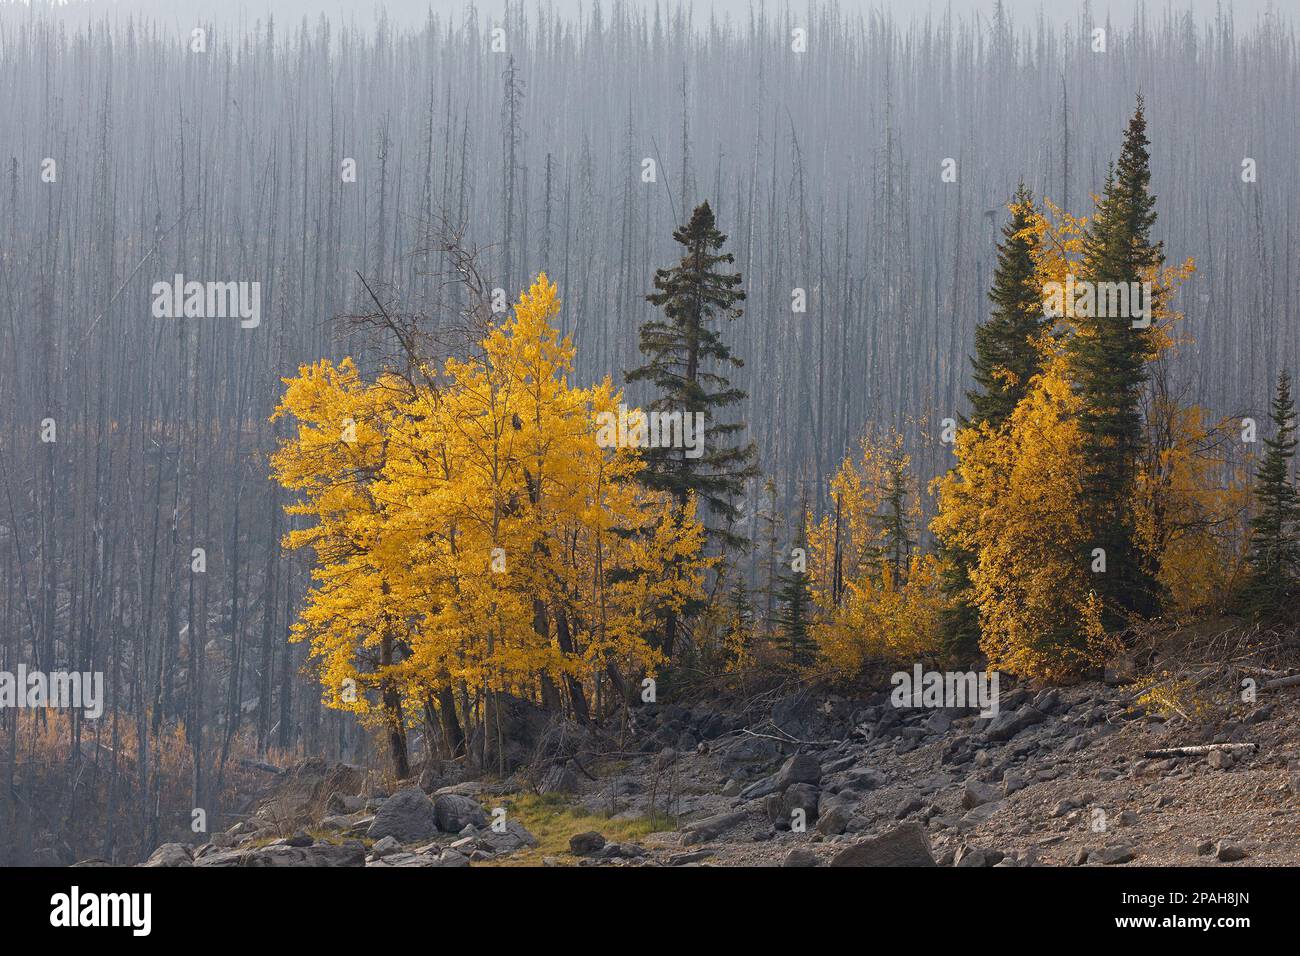 Les conifères et les feuillus restants ont survécu à un grand feu de forêt et constituent une banque de semences pour la récupération après un incendie de forêt dans le parc national Jasper, au Canada Banque D'Images